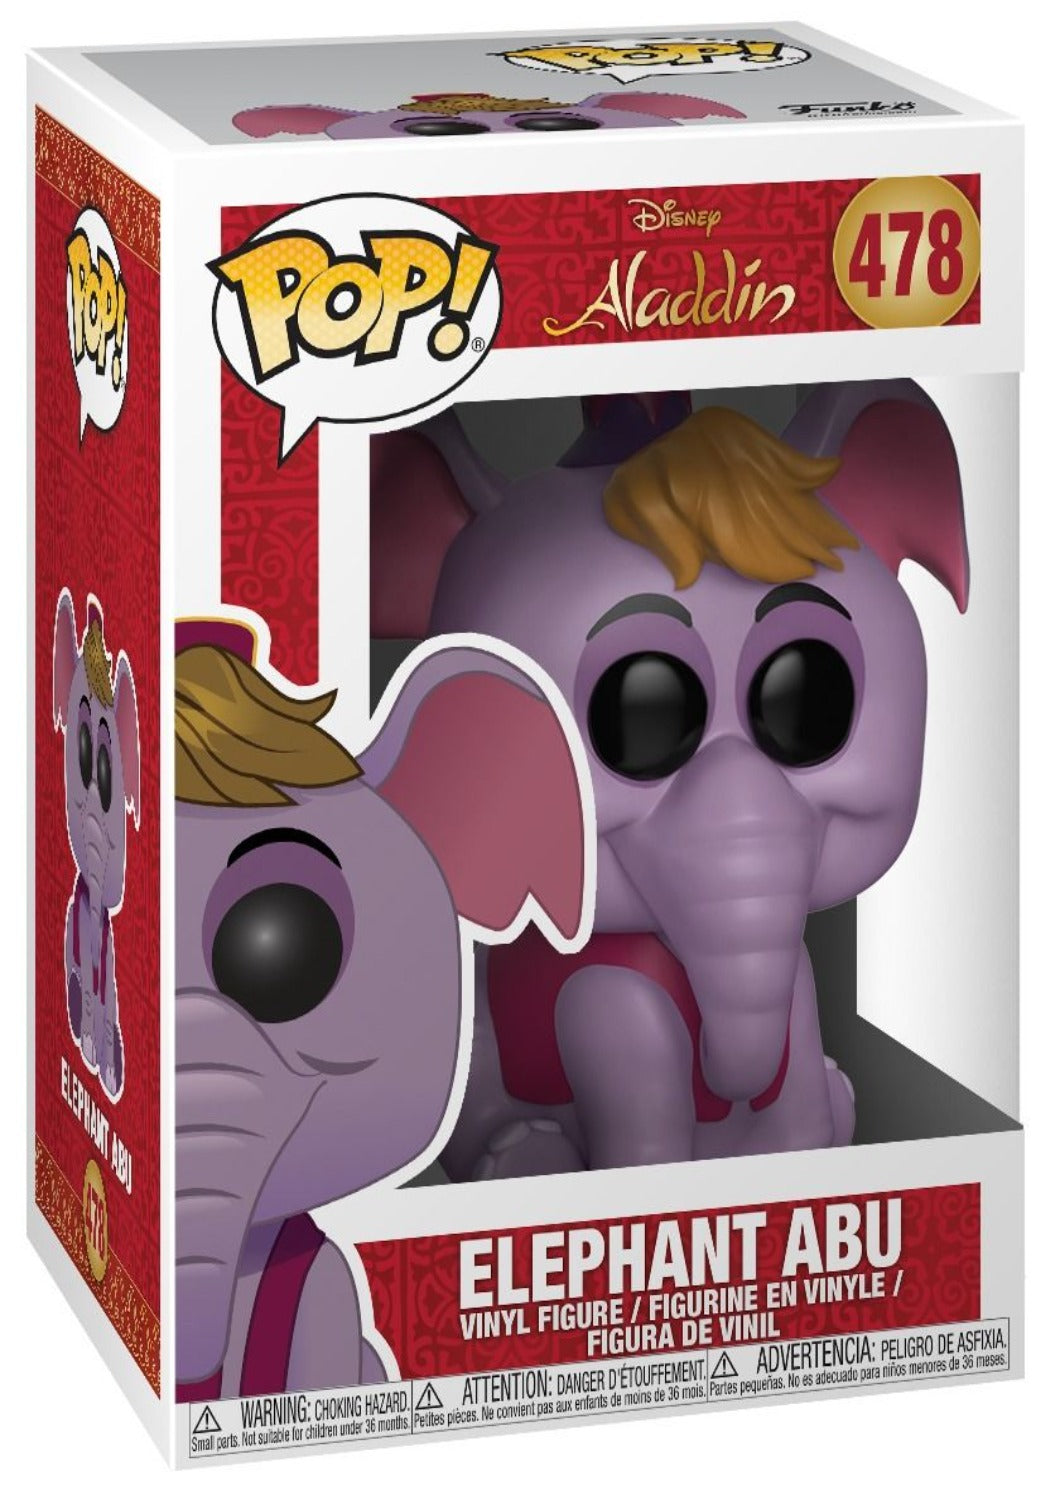 ELEPHANT ABU